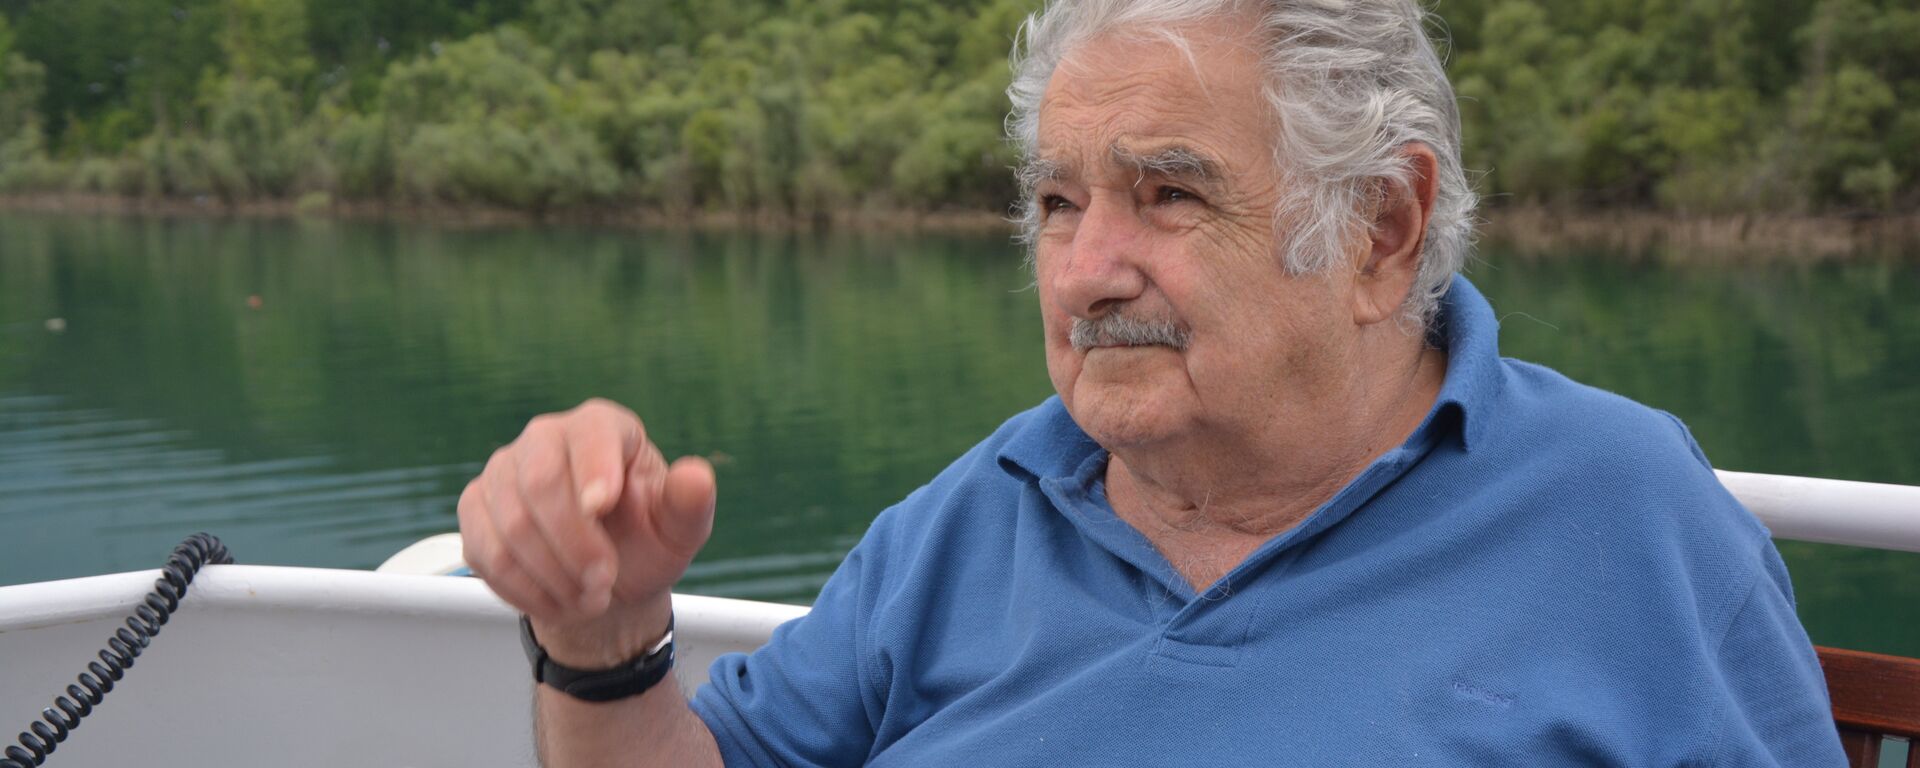 José Mujica, expresidente de Uruguay - Sputnik Mundo, 1920, 15.01.2020